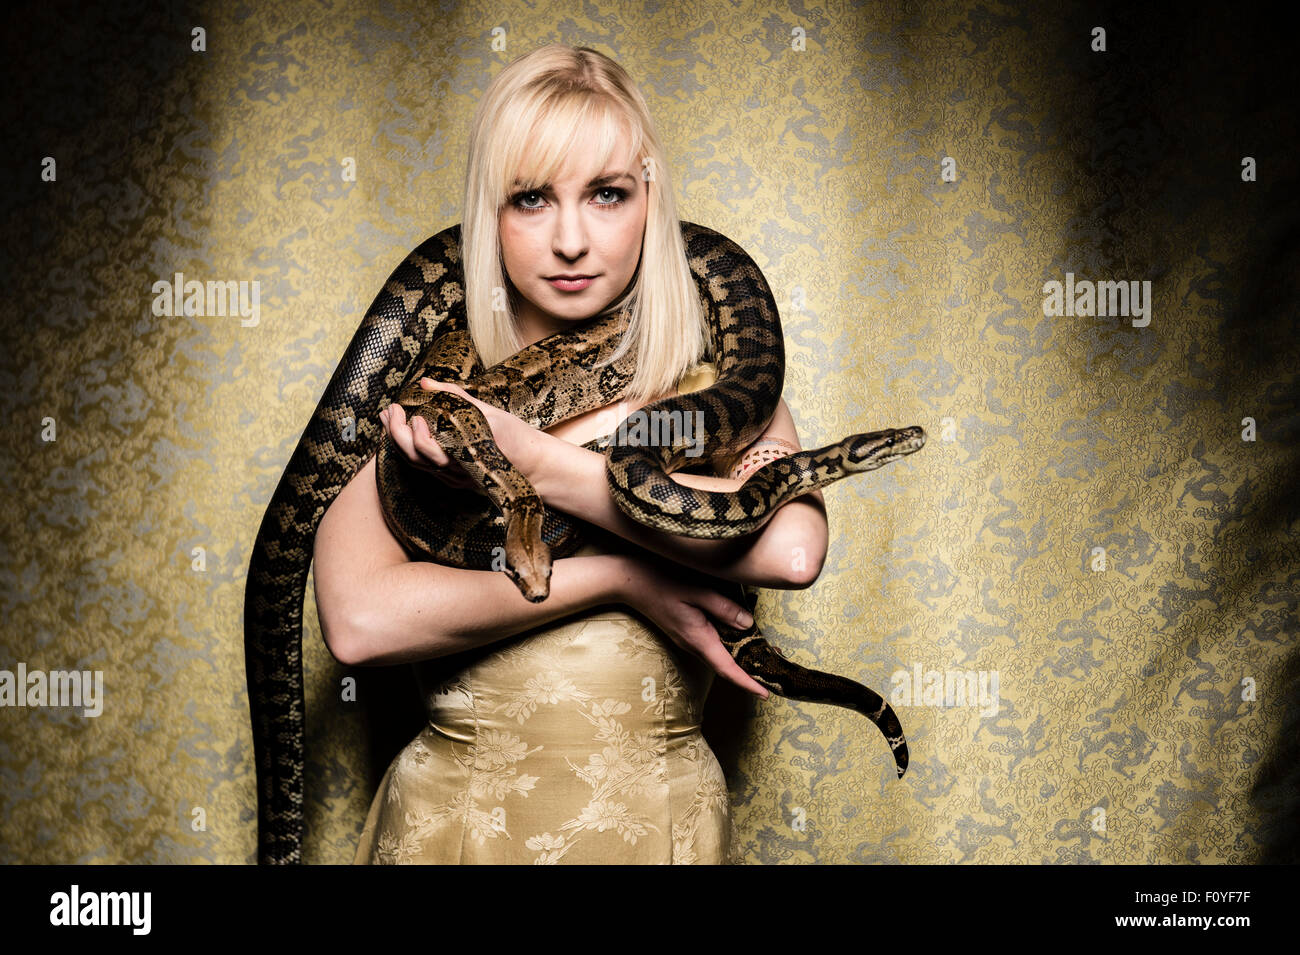 Eine junge blonde behaarte Frau Mädchen weibliche Person posiert mit Python Schlangen drapiert um ihre Schultern, UK (Ophiophobia - die Angst vor Schlangen nicht leiden) Stockfoto